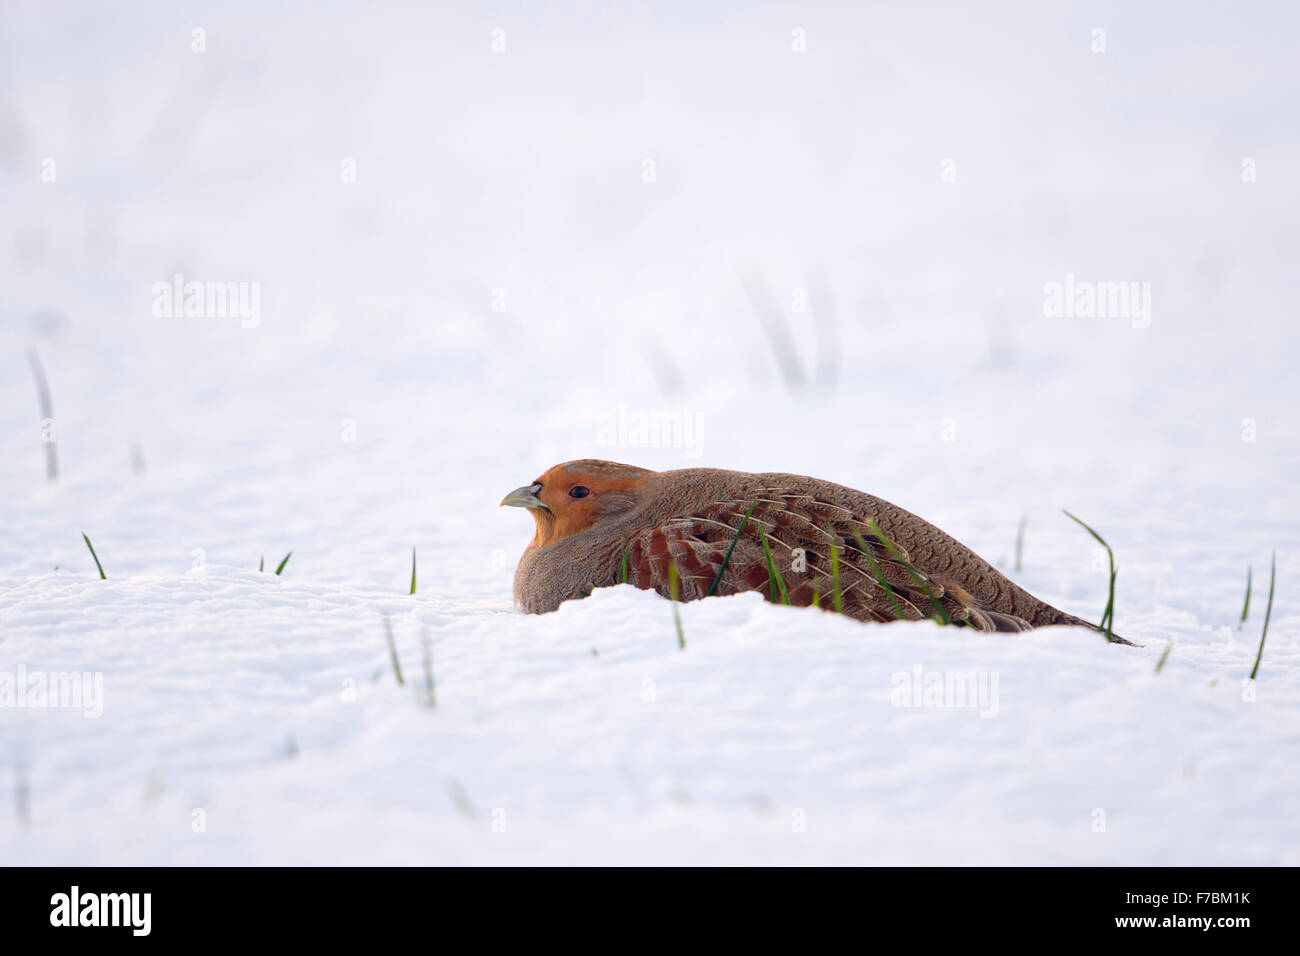 La perdiz / Rebhuhn ( Perdix perdix ) se encuentra en la nieve, mirando alrededor, el frío invierno. Foto de stock